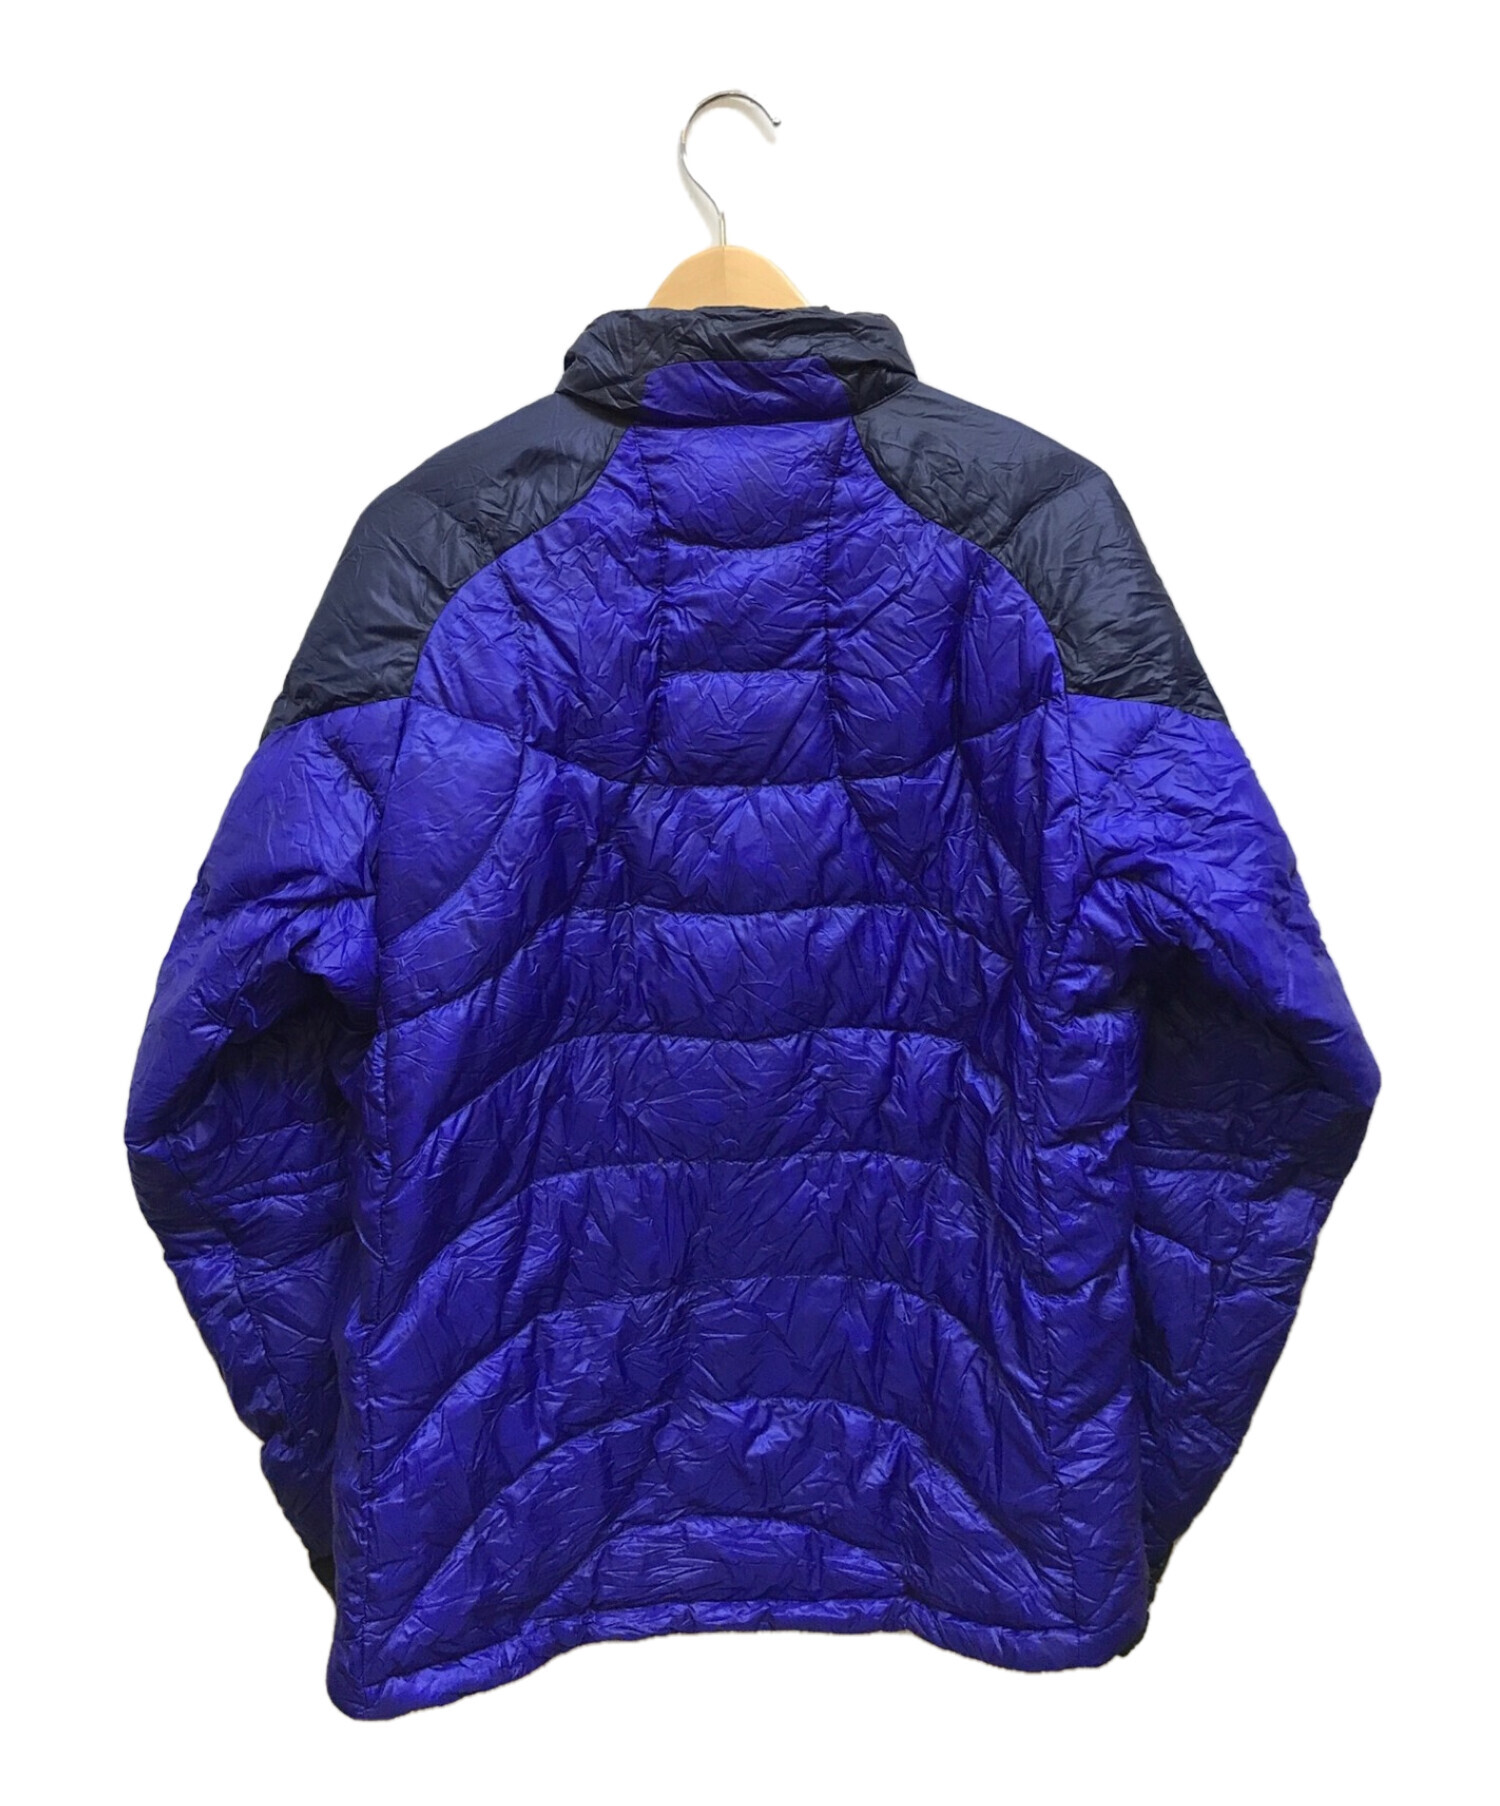 Marmot (マーモット) プレミアムダウンジャケット ブルー サイズ:XL